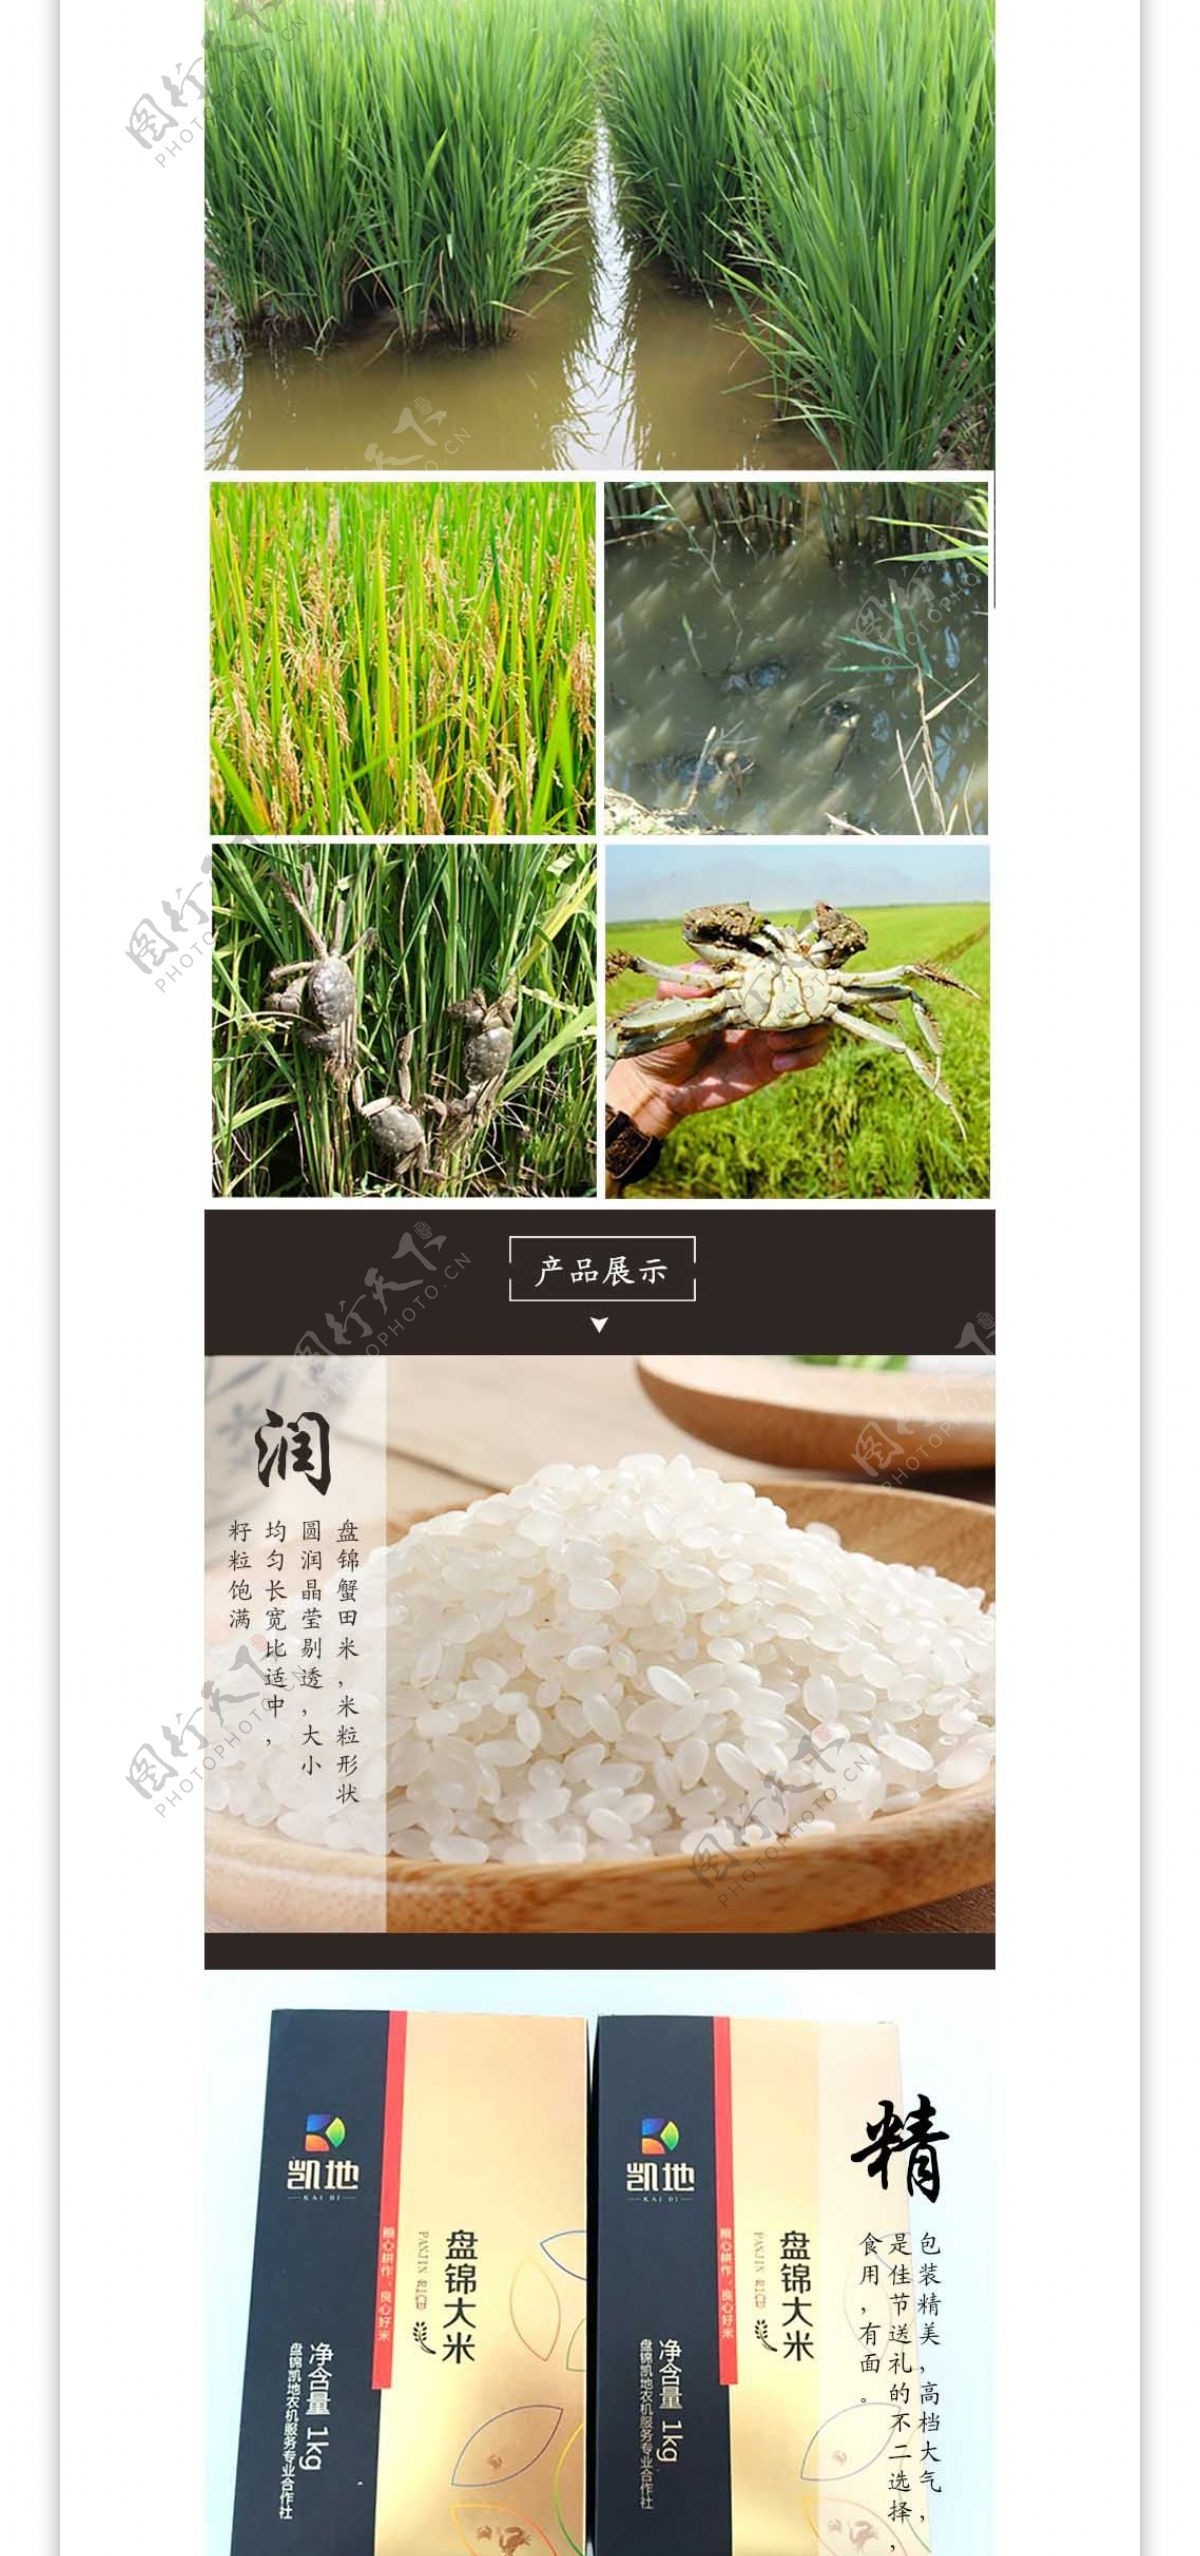 盘锦大米食品类淘宝详情